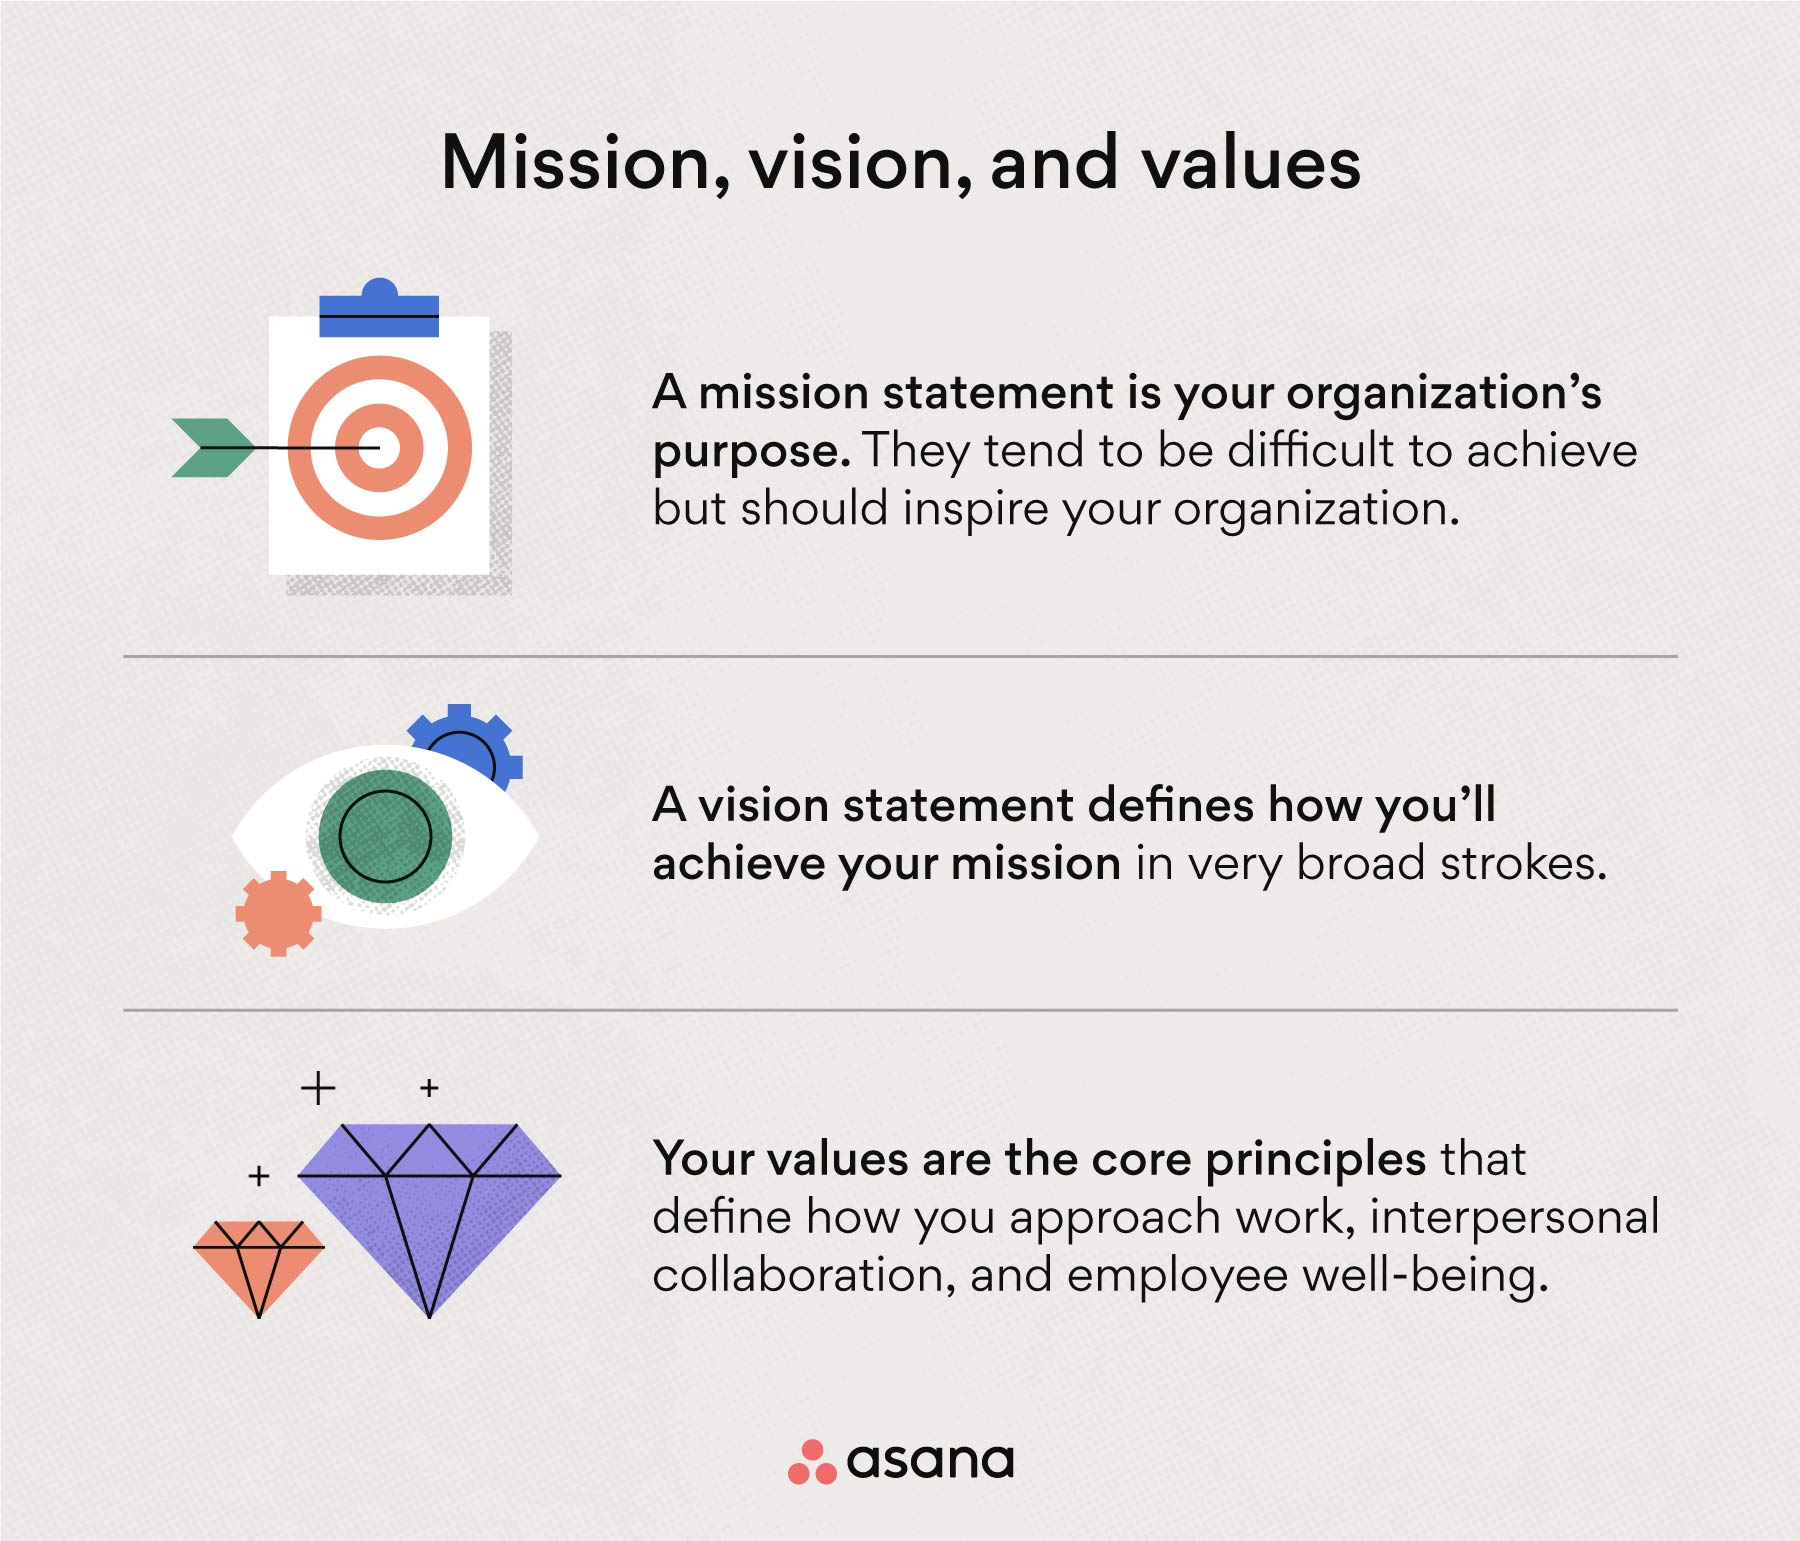 Definición de misión, visión y valores